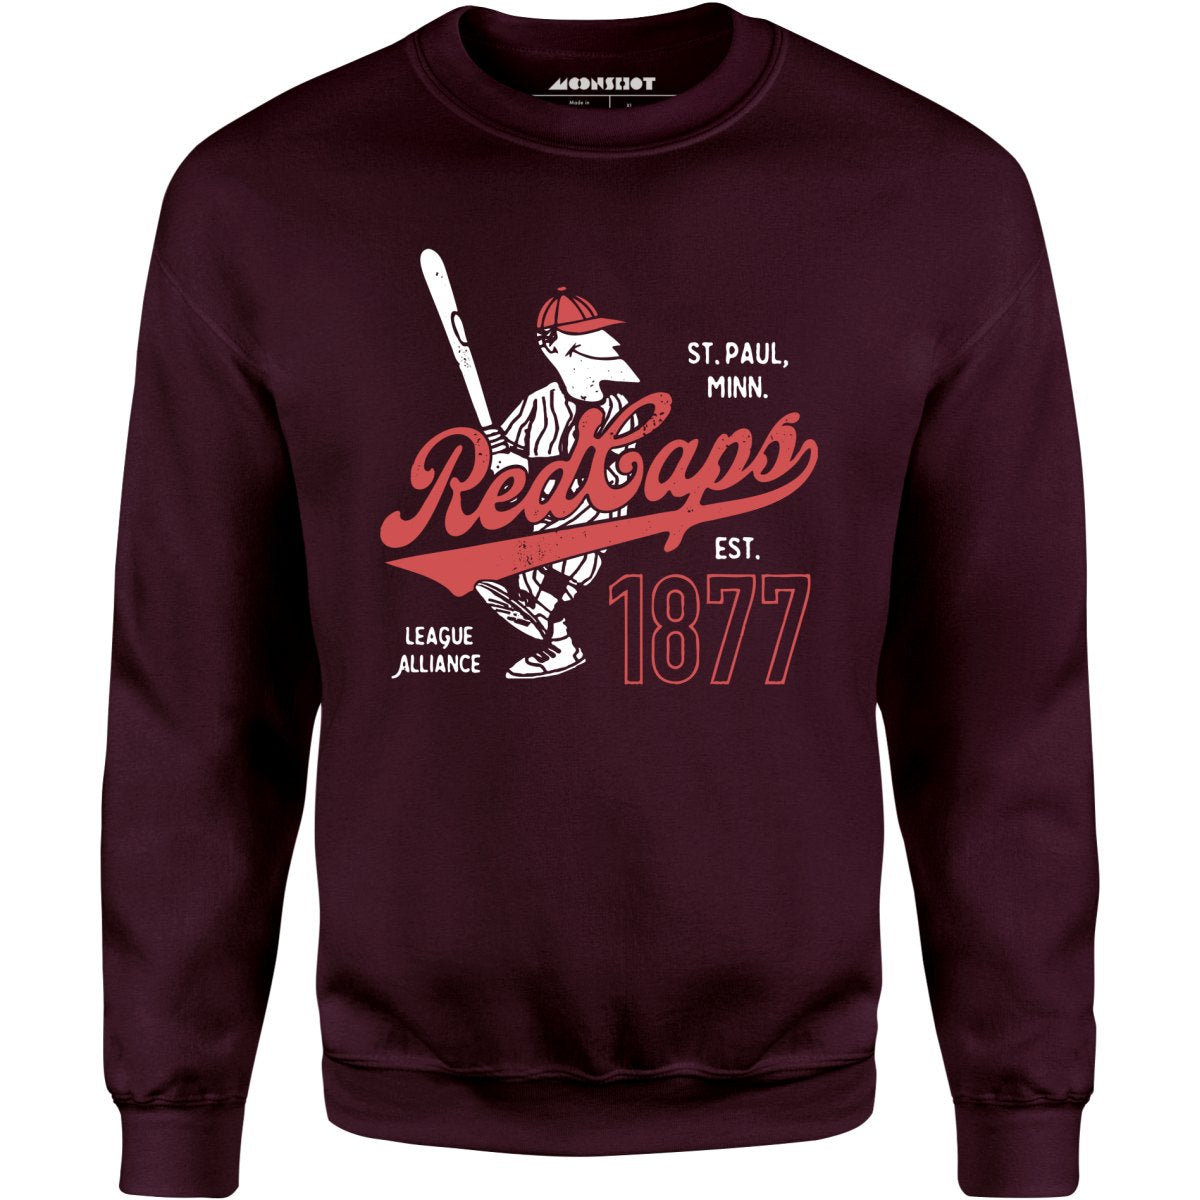 Saint Paul Red Caps - Minnesota - Vintage Defunct Baseball Teams - Unisex Sweatshirt